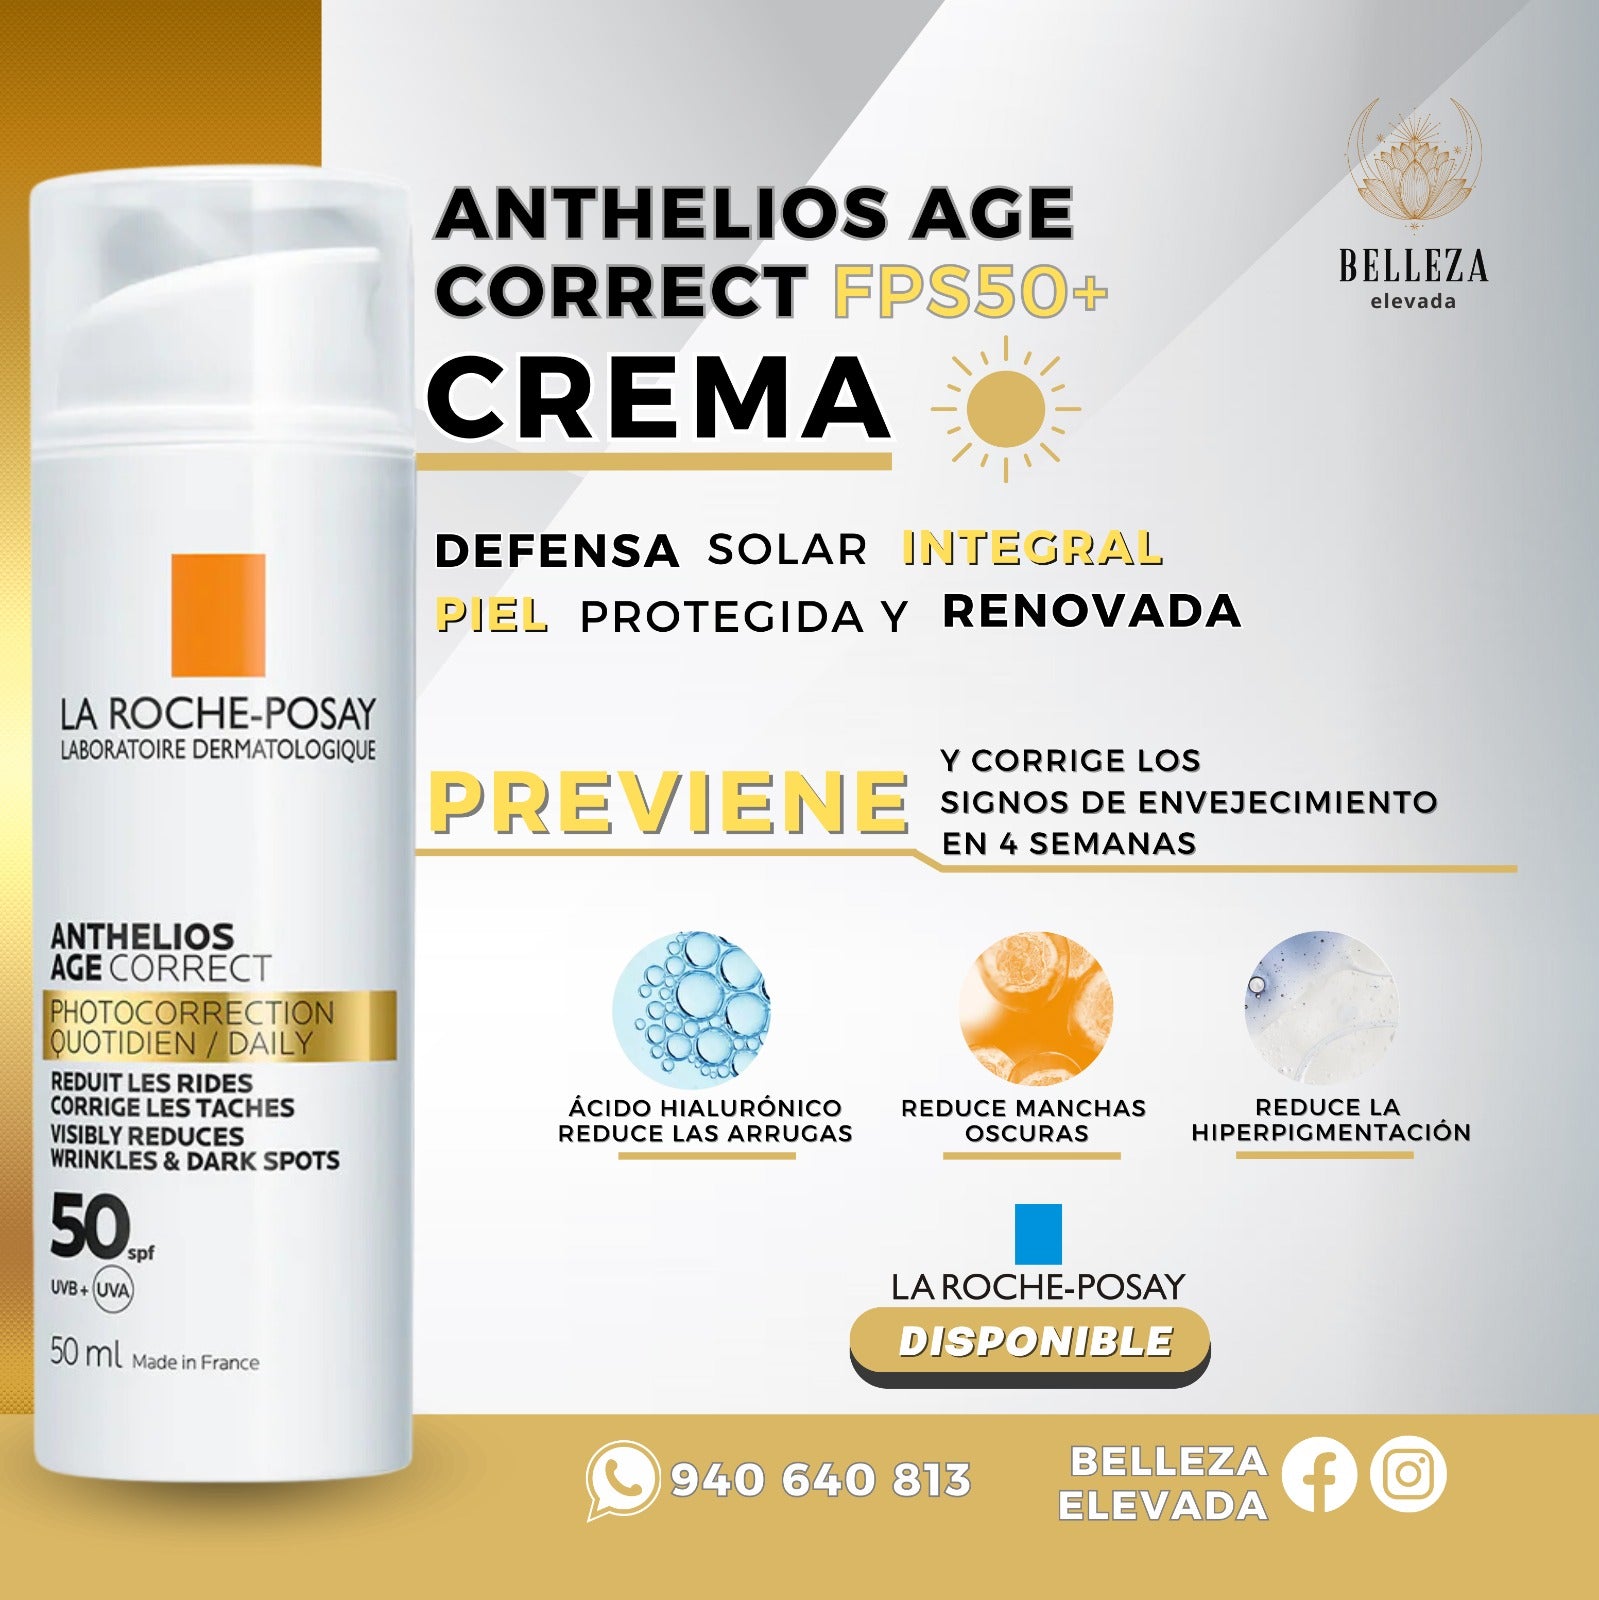 Crema Anthelios AGE Correct FPS 50+ (50 ml) Defensa Solar Integral Piel Protegida y Renovada La Roche-Posay